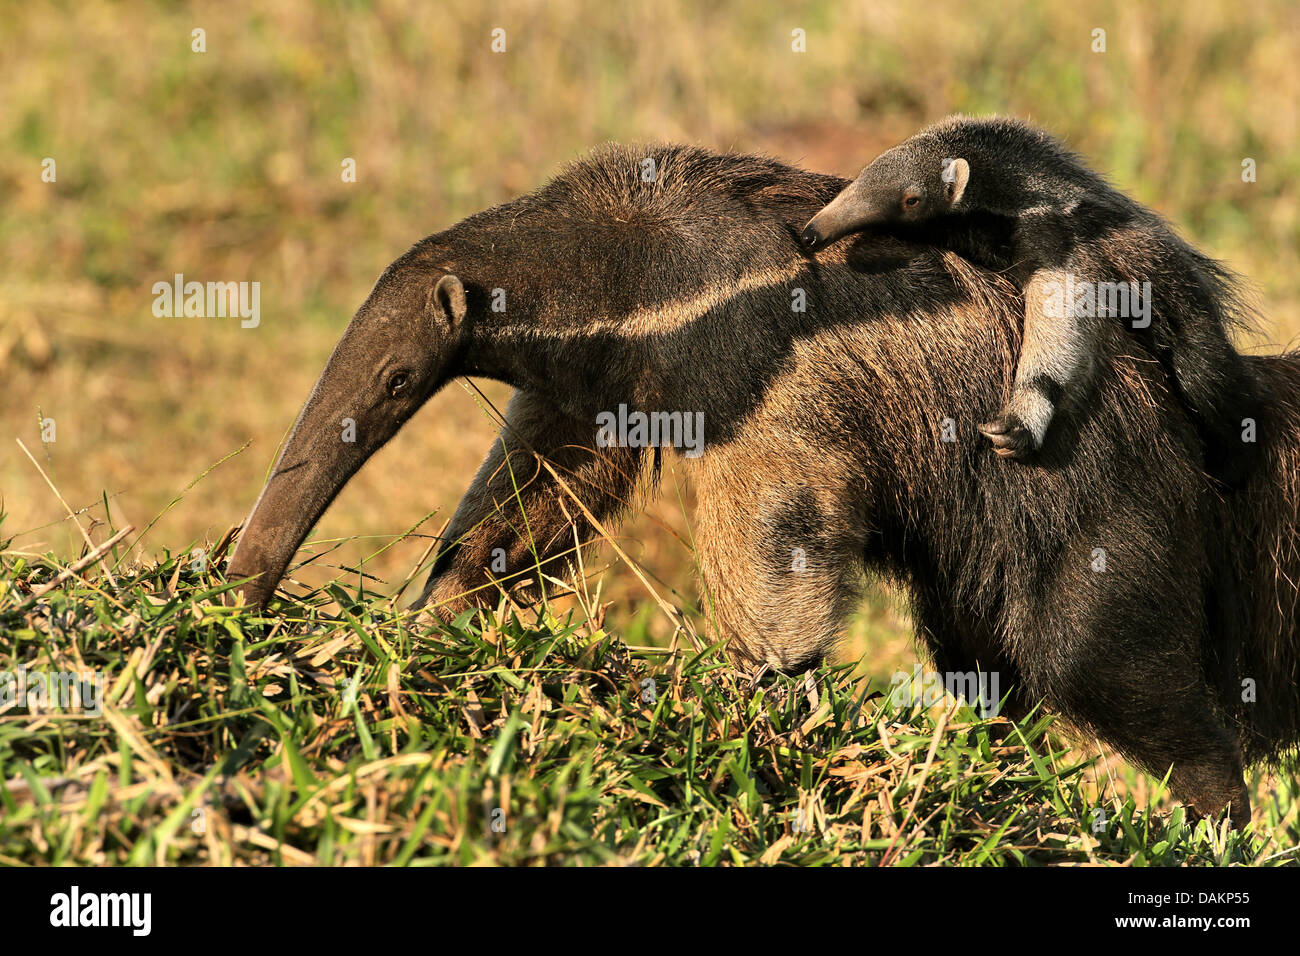 Oso hormiguero gigante (Myrmecophaga tridactyla), hembra de oso hormiguero que llevaba a su bebé en la espalda, Brasil, Mato Grosso do Sul Foto de stock